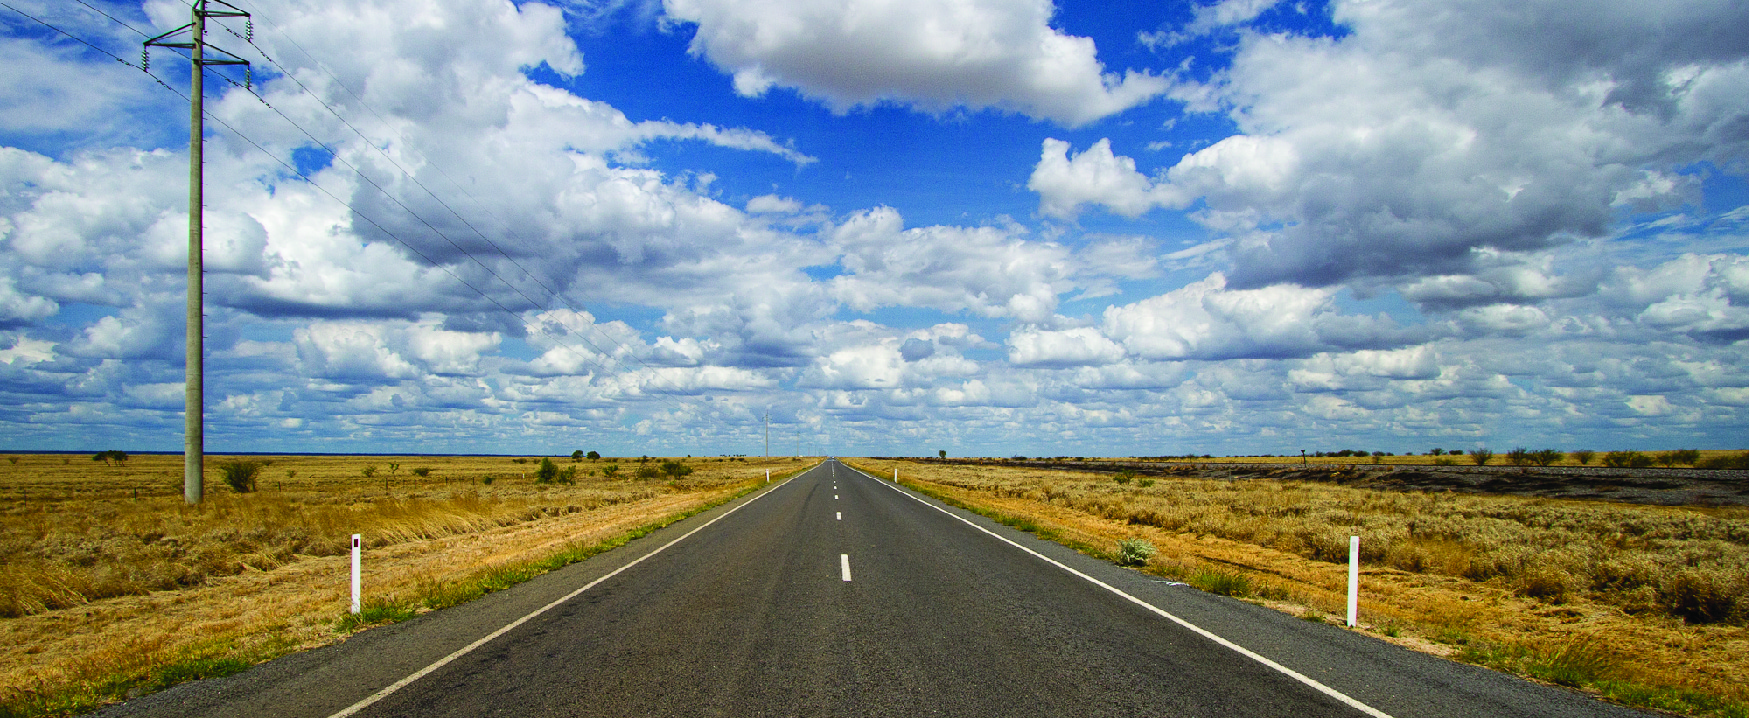 Esta imagem mostra o meio de uma estrada aberta com nuvens no céu e uma paisagem aberta em ambos os lados da estrada.